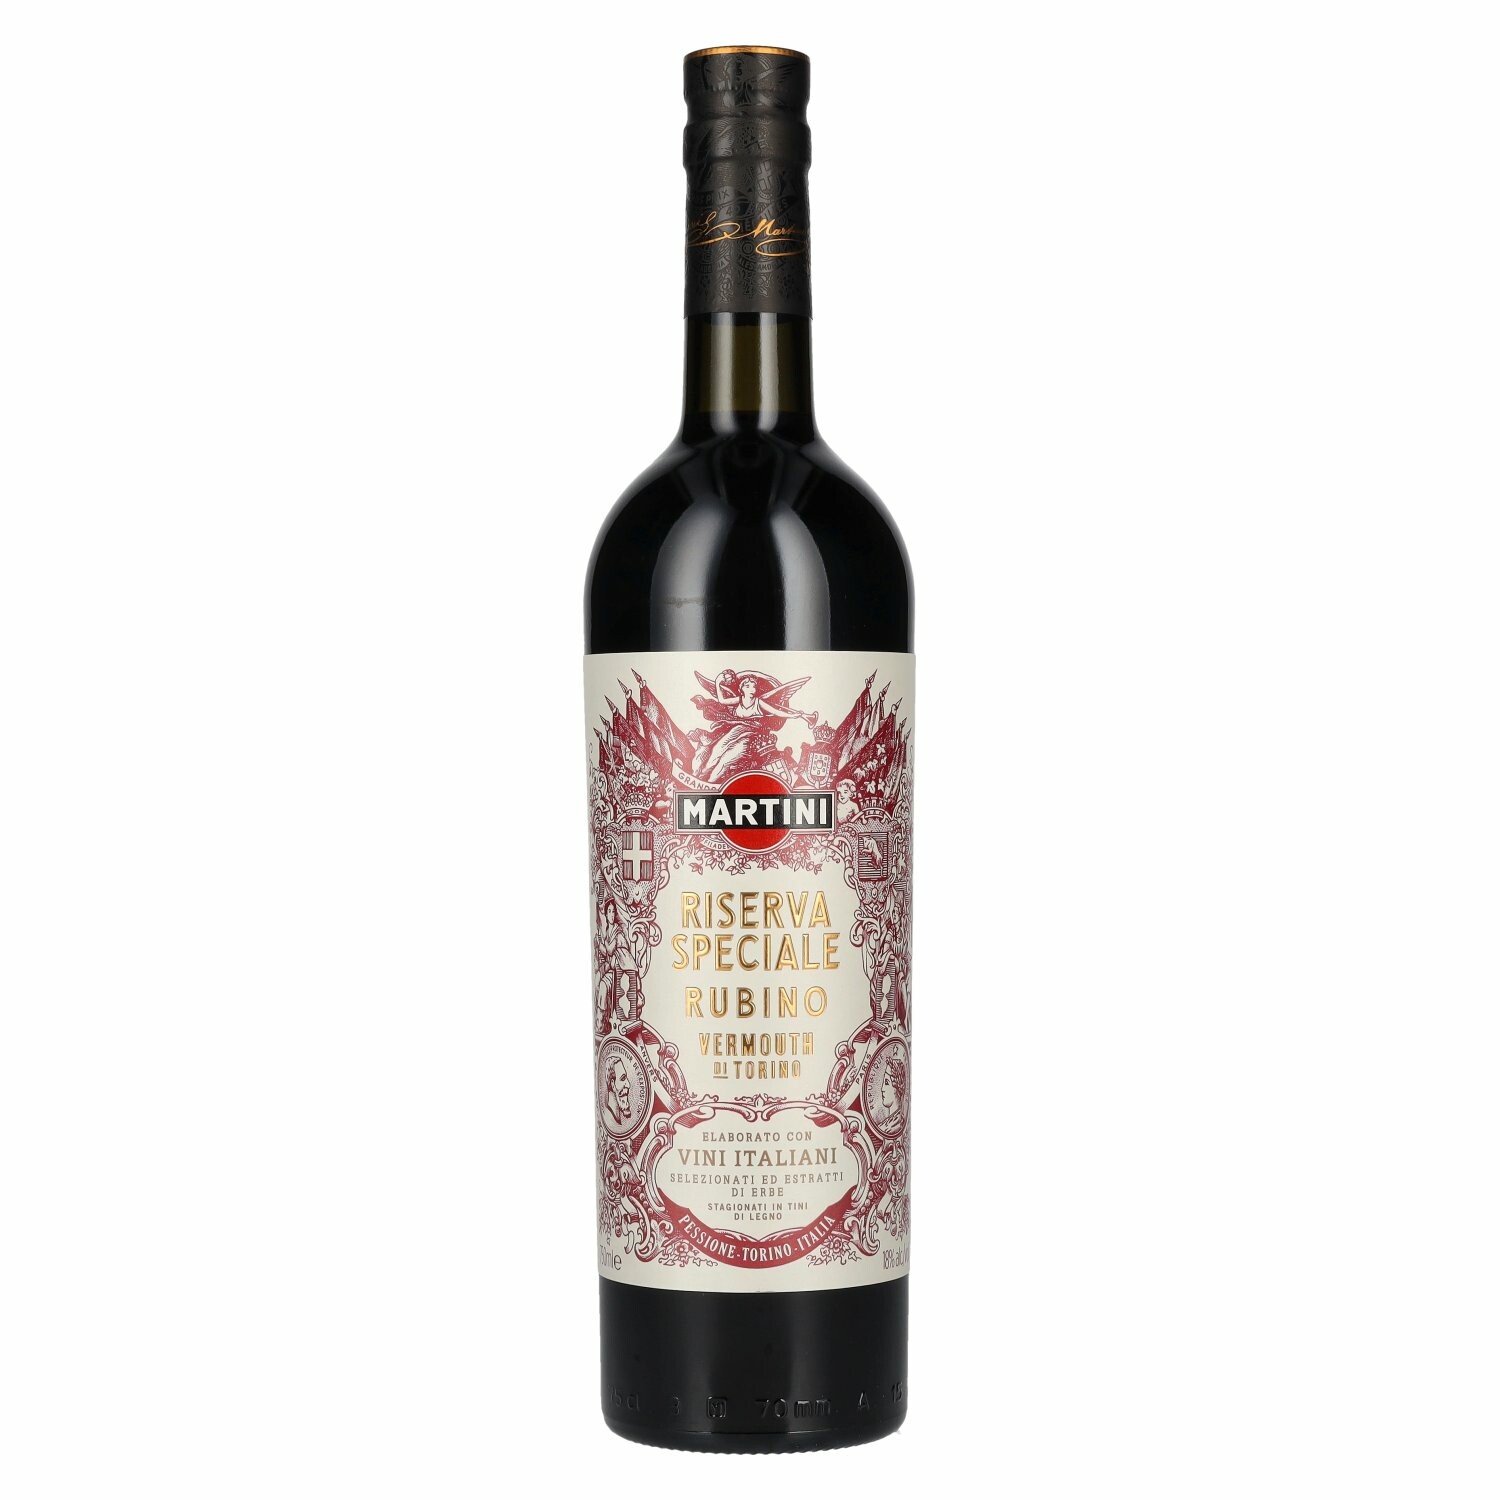 Martini Riserva Speciale RUBINO Vermouth di Torino 18% Vol. 0,75l